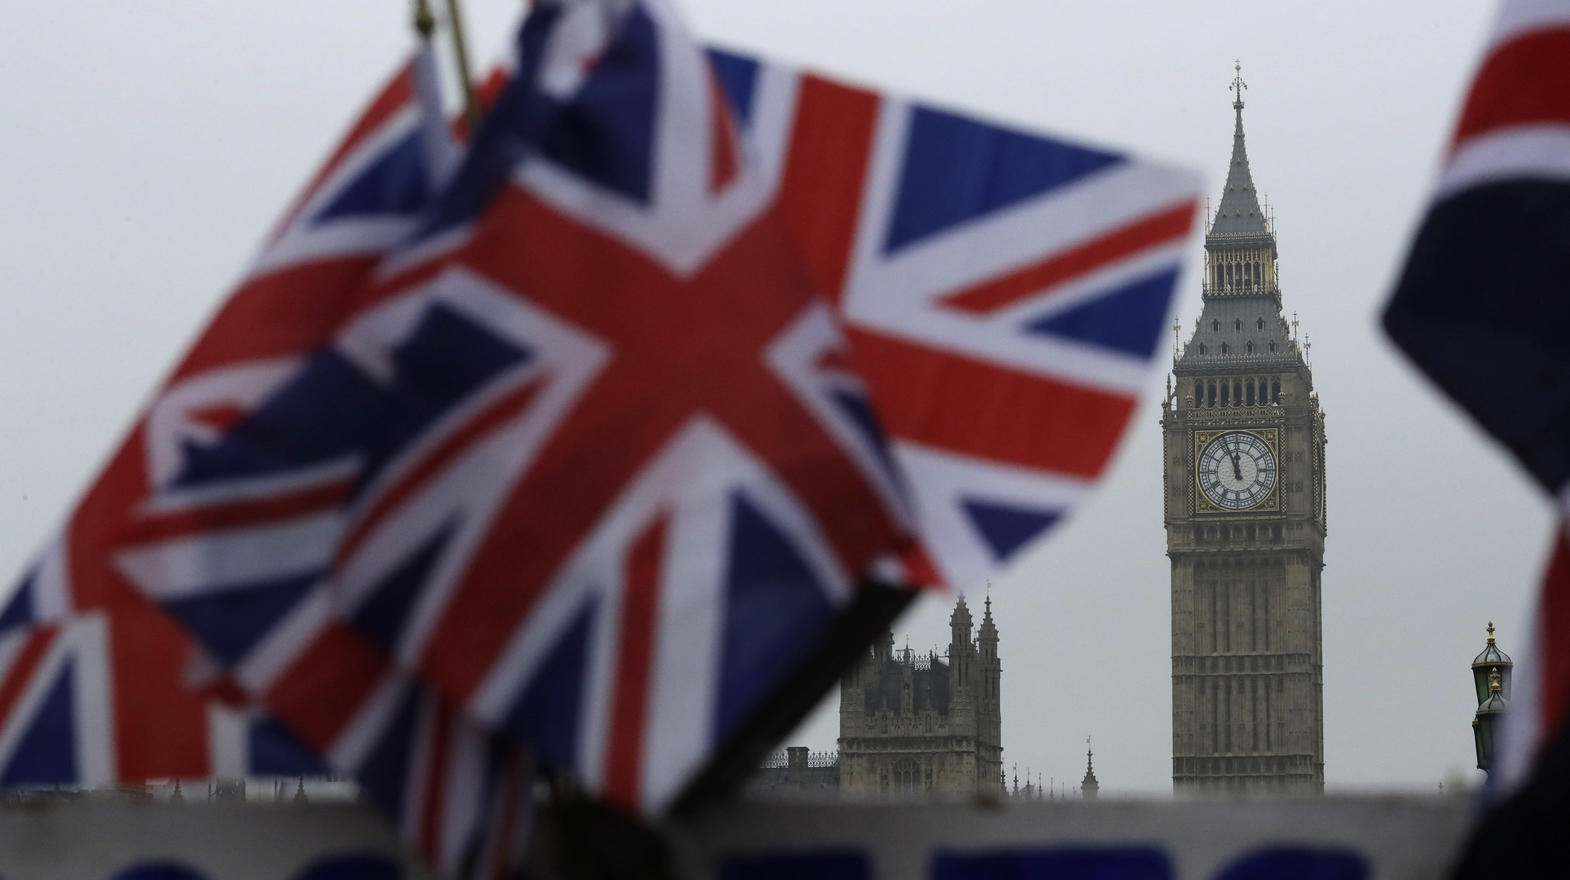 ARCHIV - Britische Flaggen wehen am 08.02.2017 in London (Großbritannien) in der Nähe des berühmten Uhrturms Big Ben. Der Uhrturm ist Teil des Palace of Westminster, in dem das britische Parlament tagt. Die britische Premierministerin May wird am 29.